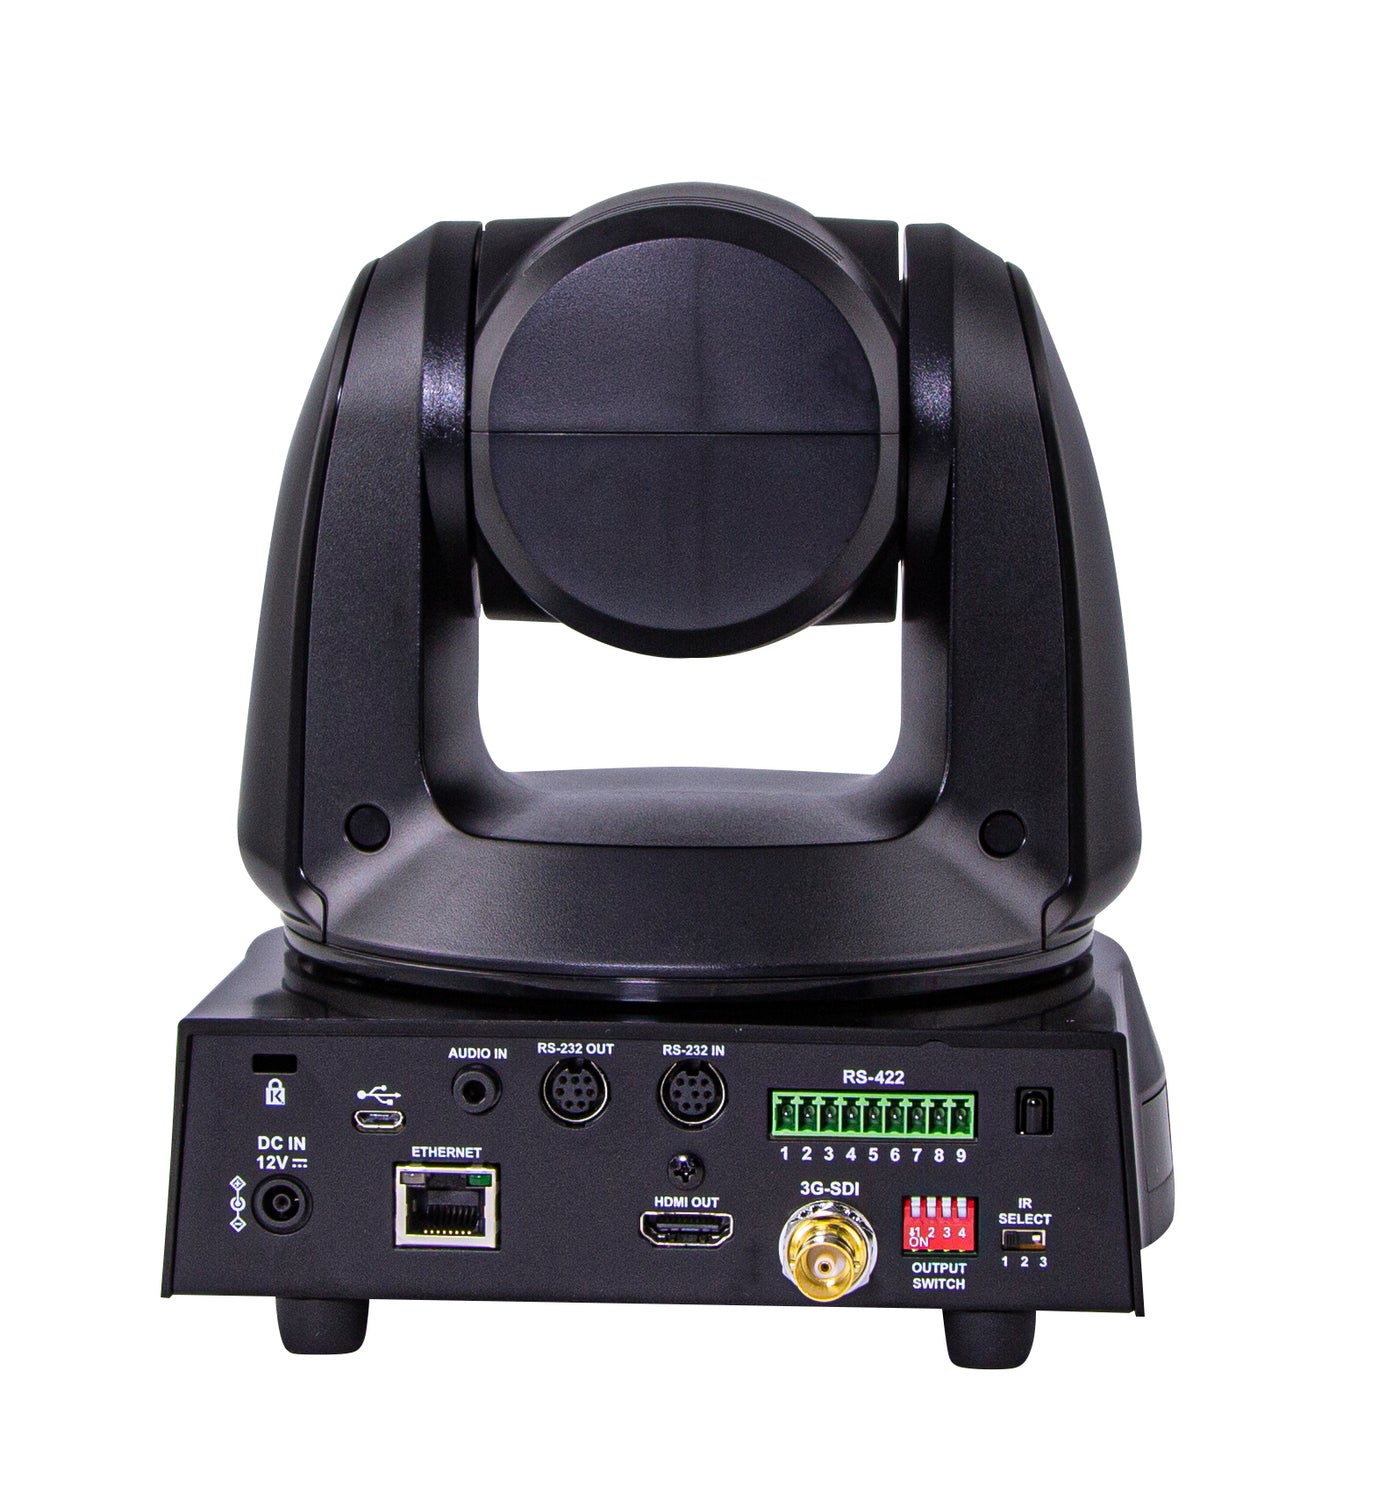 Marshall CV620-BI 20X Full-HD60 IP PTZ Camera (Black)